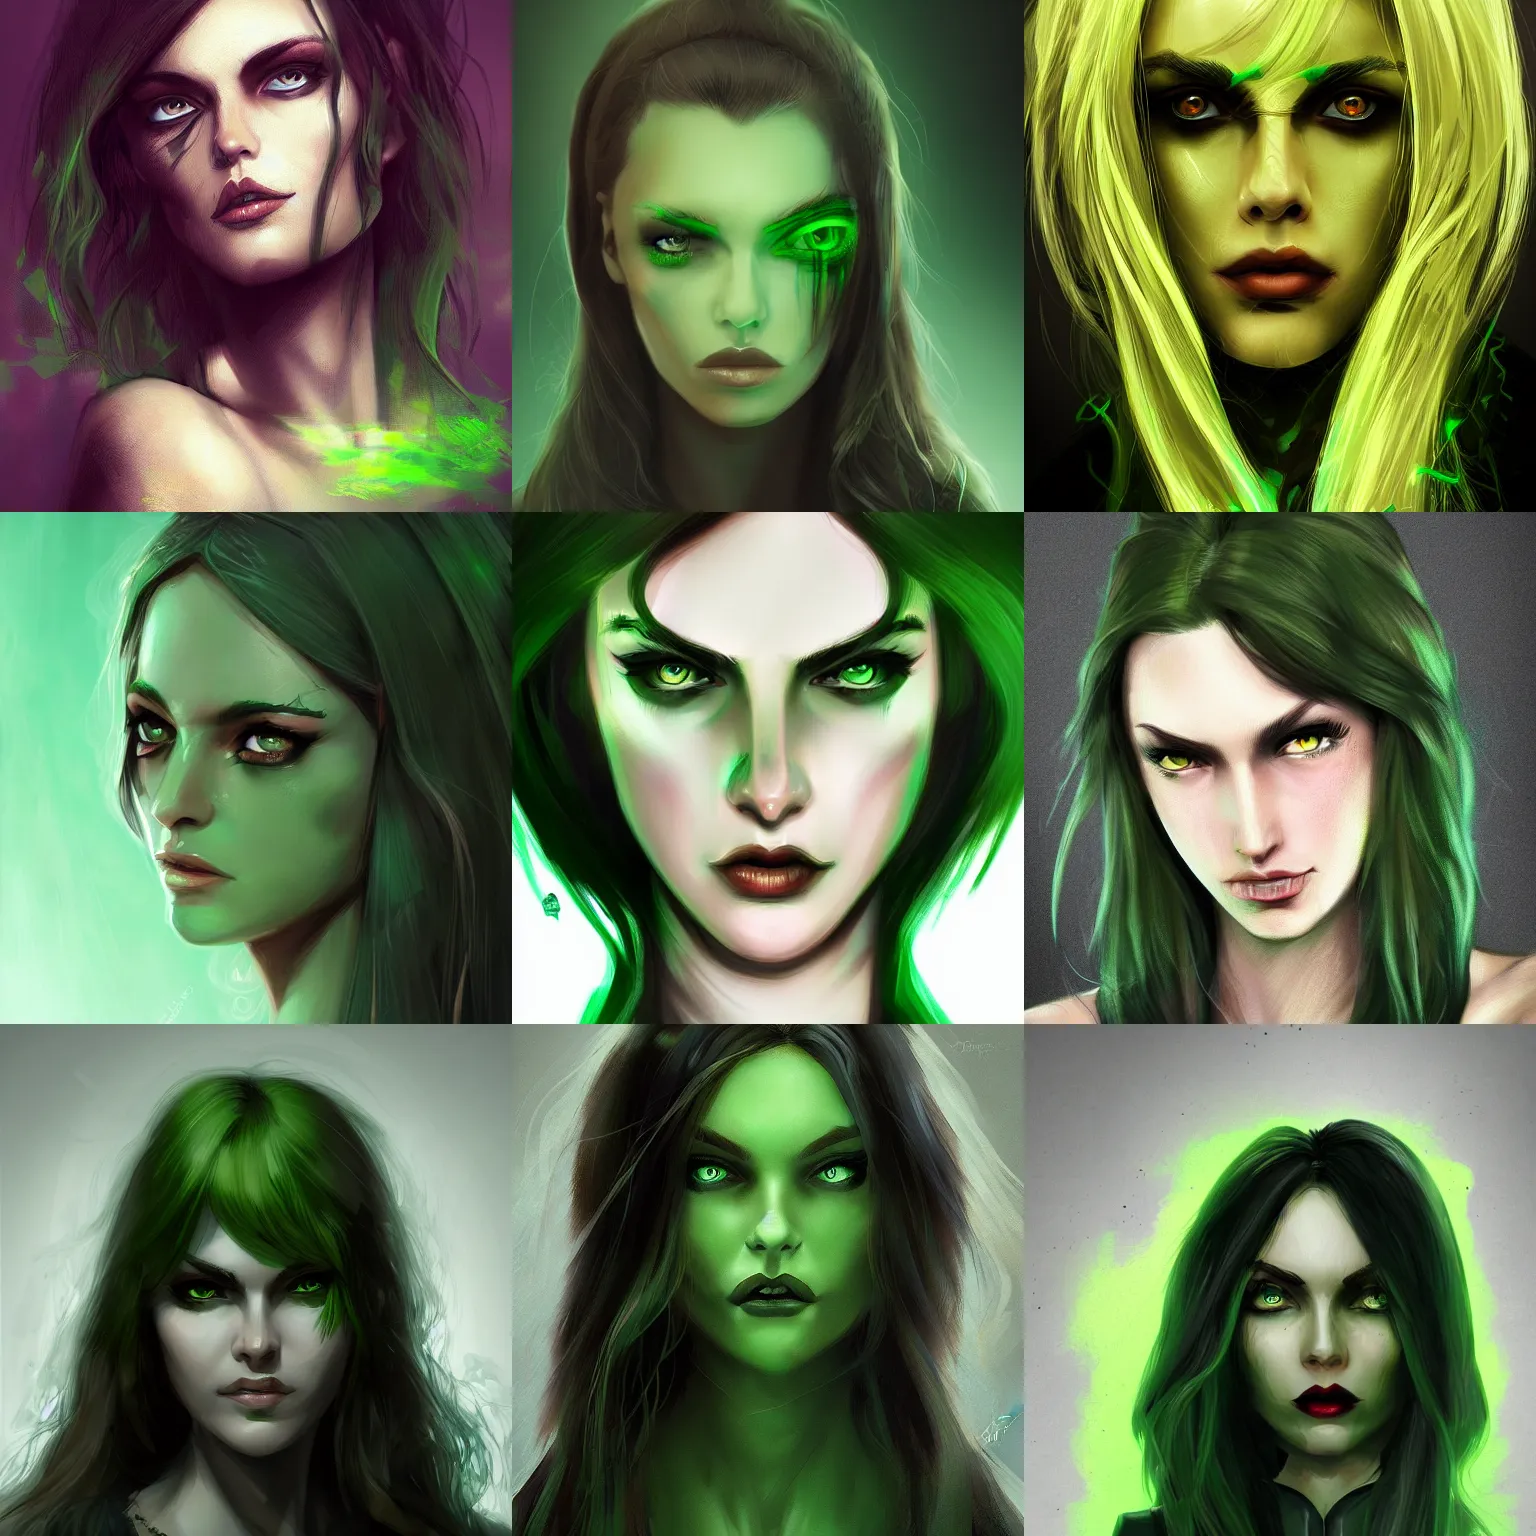 Prompt: Woman with green eyes, dark, menacing, artstation, digital art